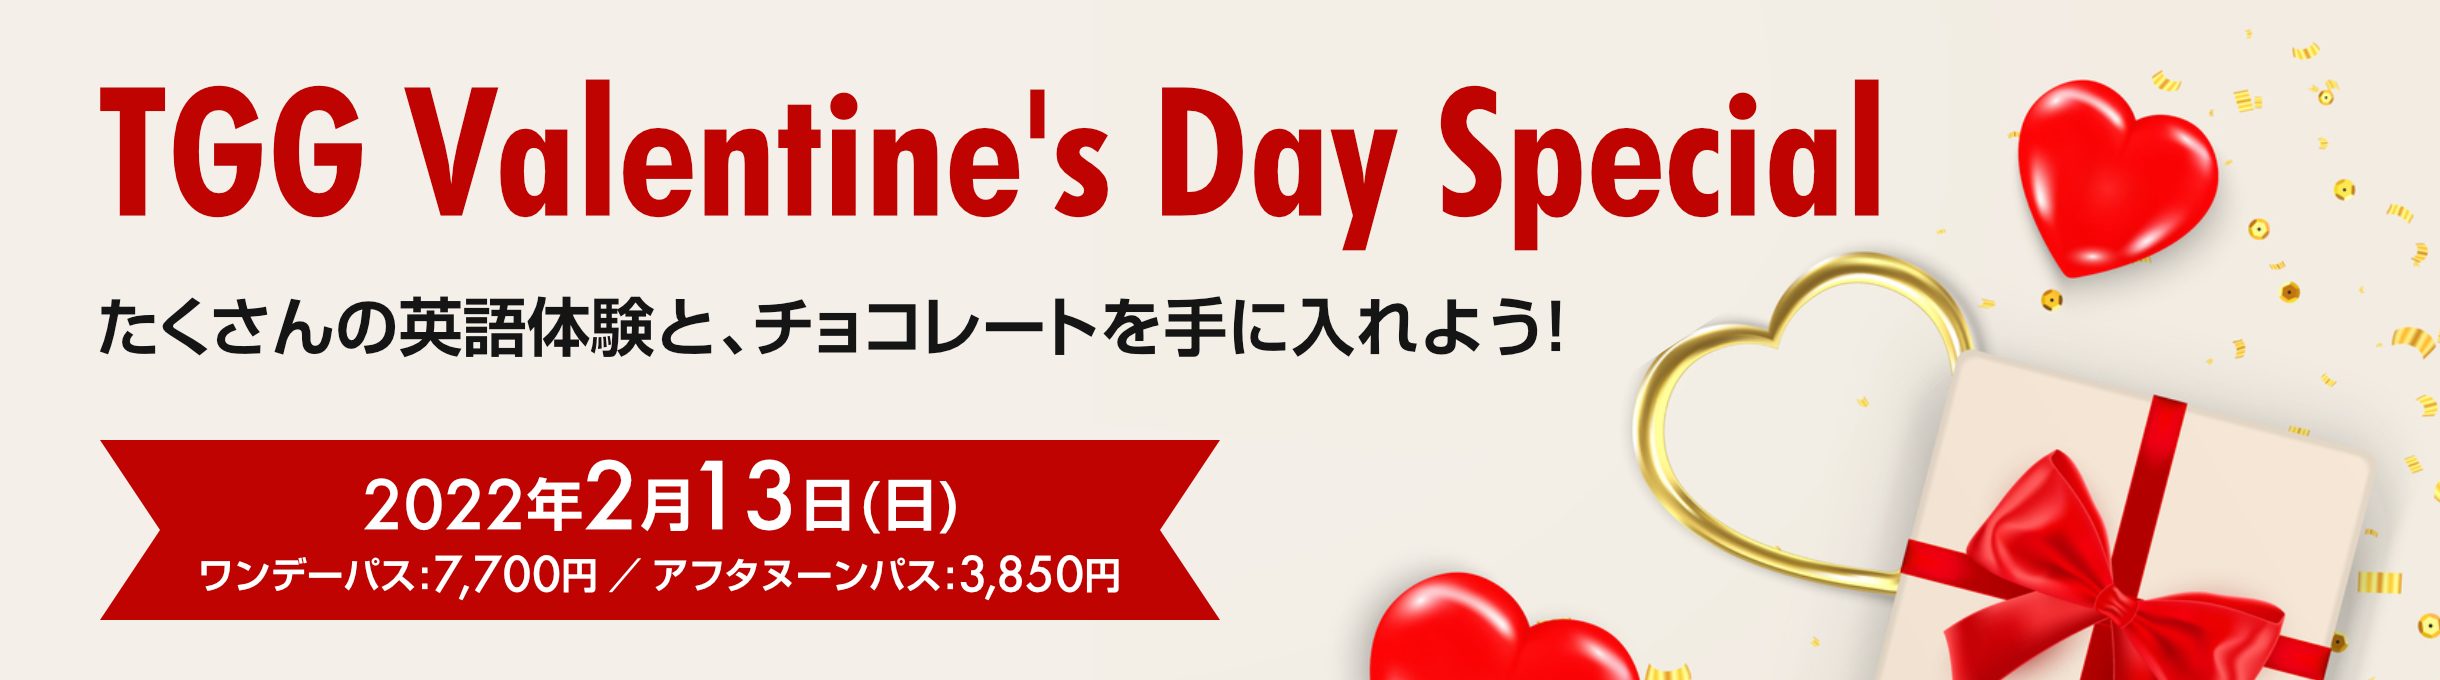 TGG Valentine's Day Special 2022年2月13日(日) ワンデーパス：7,700円、アフタヌーンパス：3,850円、たくさんの英語体験と、チョコレートを手に入れよう！